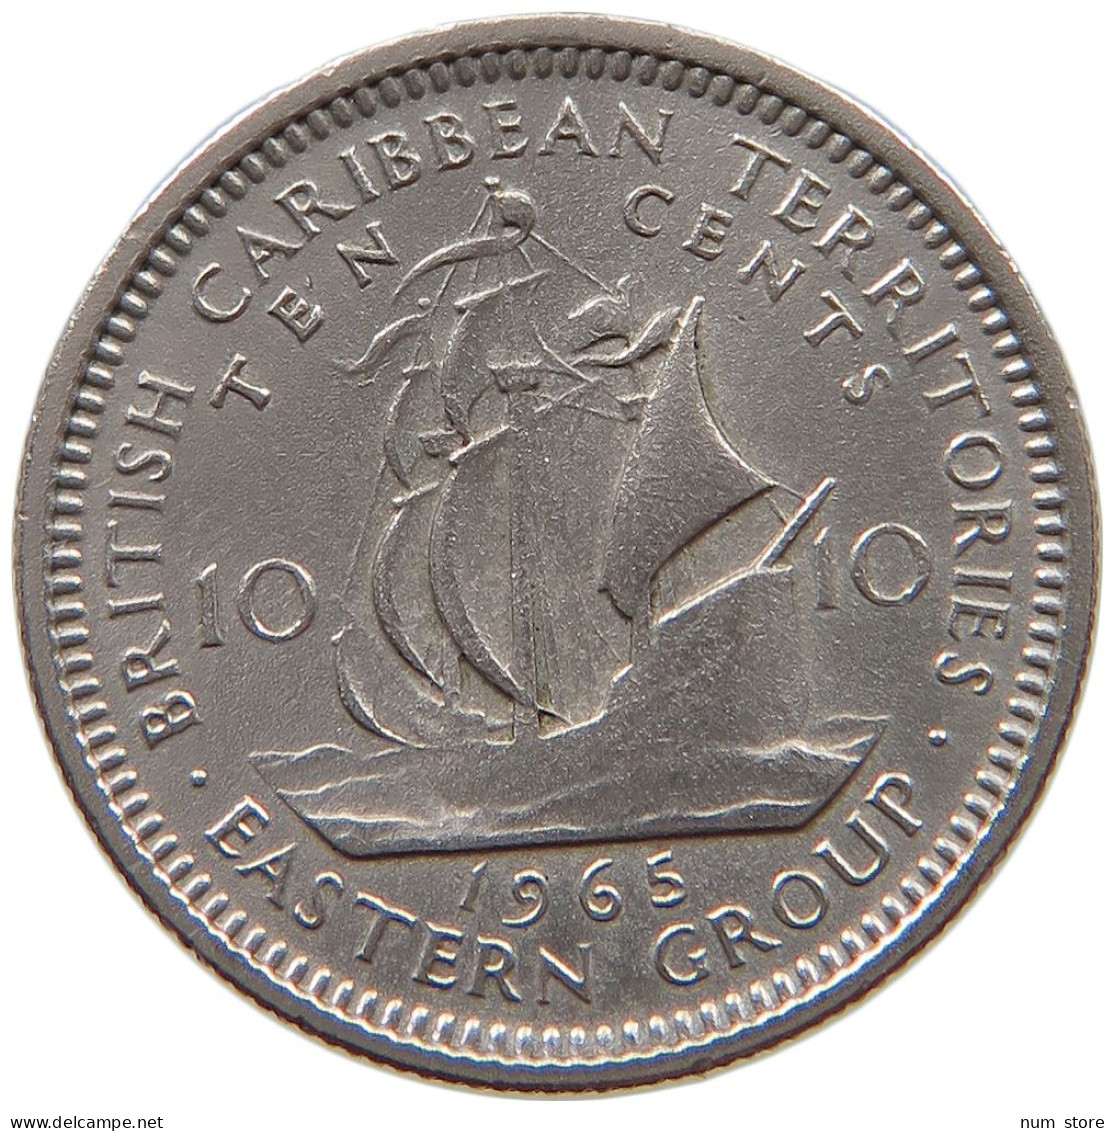 BRITISH CARIBBEAN TERRITORIES 10 CENTS 1965 Elizabeth II. (1952-2022) #a061 0713 - British Caribbean Territories